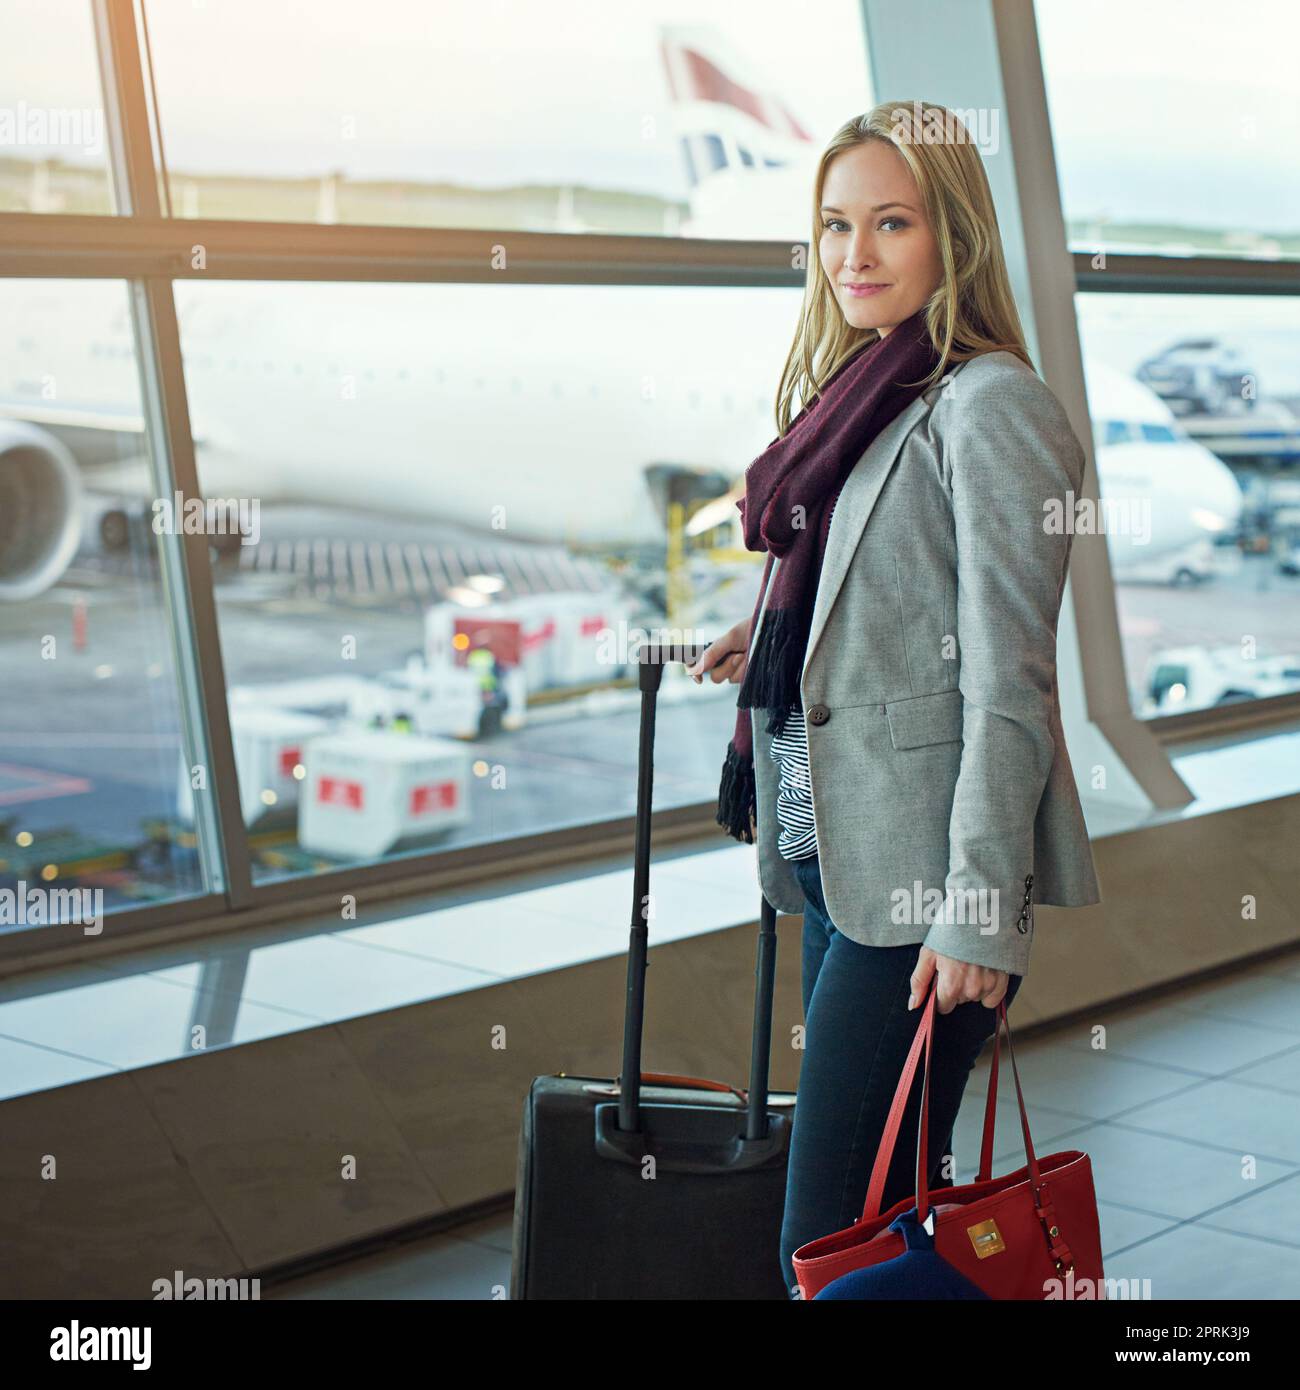 Shes, die in einem Düsenflugzeug abfliegen. Porträt einer jungen Frau, die mit ihrem Gepäck auf einem Flughafen steht. Stockfoto